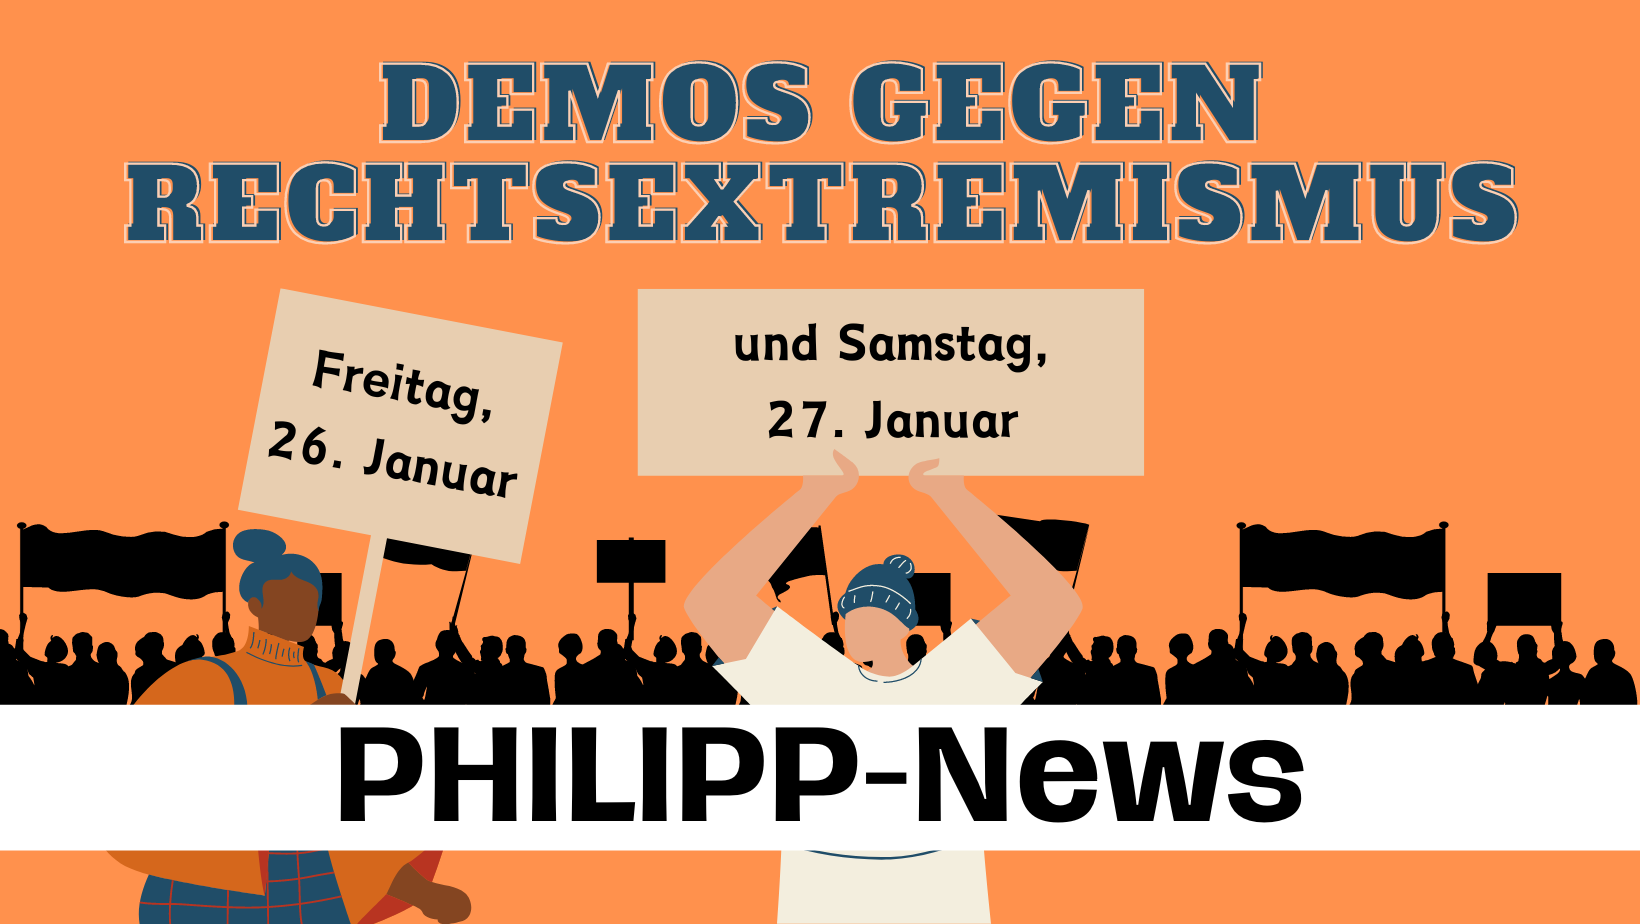 PHILIPP-News: Marburg demonstriert gegen Rechtsextremismus